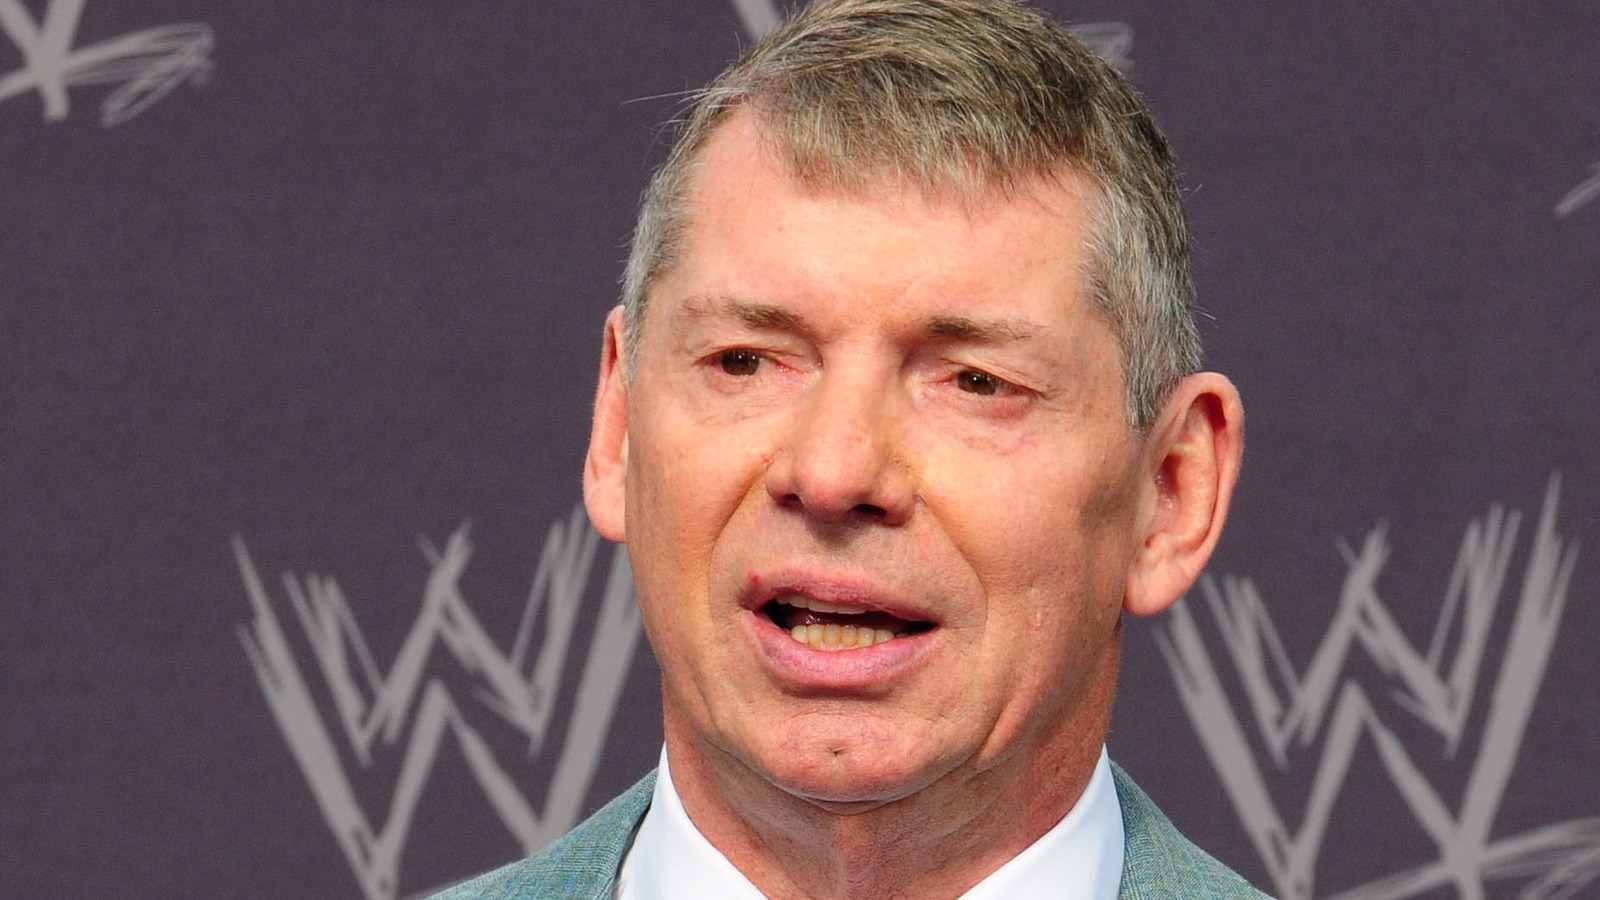 Más noticias y especulaciones sobre Vince McMahon y WWE